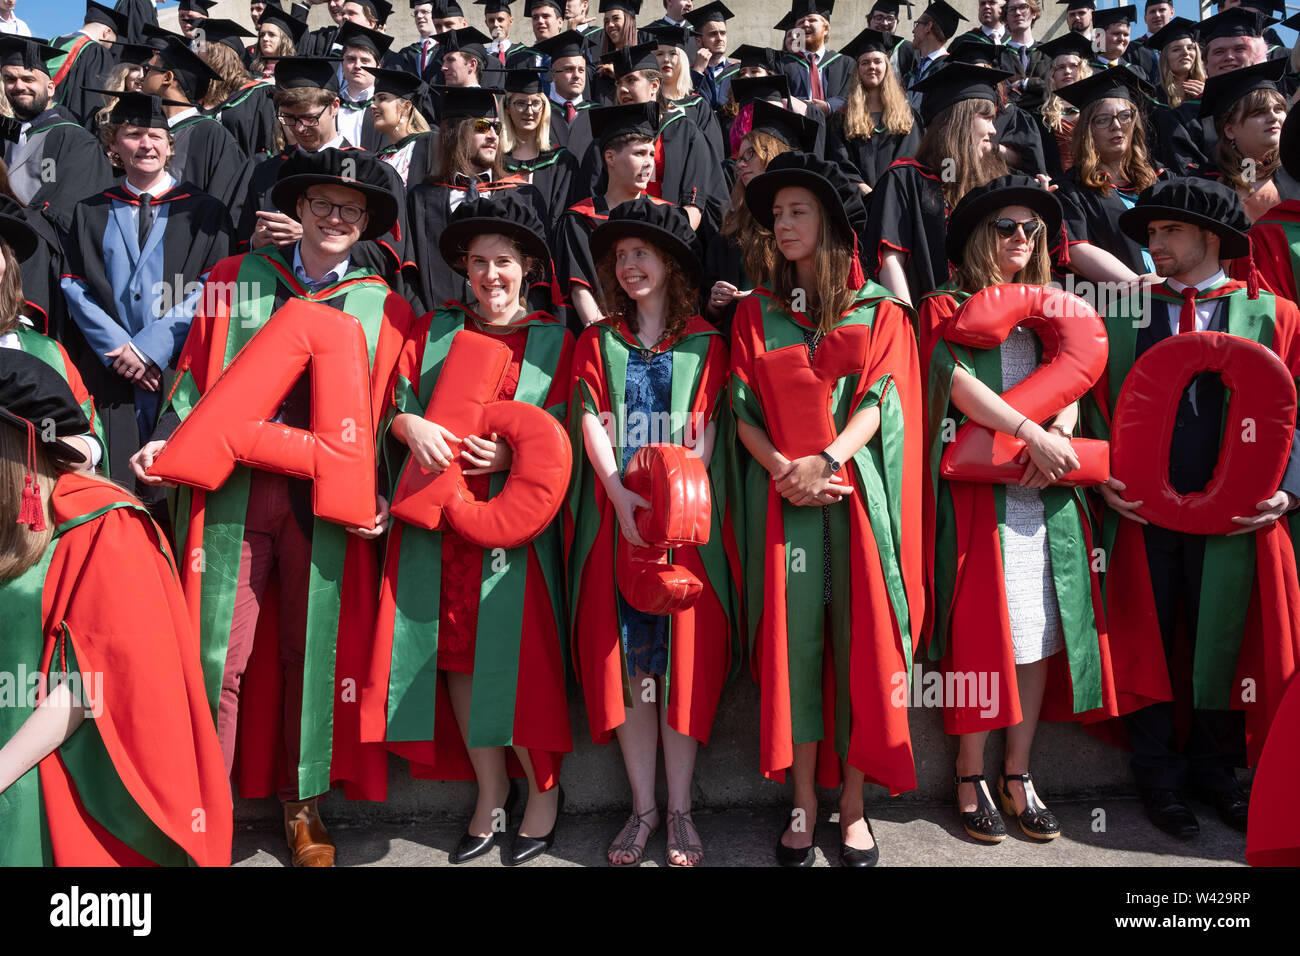 L'enseignement supérieur au Royaume-Uni - le succès des étudiants de doctorat doctorat à la remise des diplômes à l'université d'Aberystwyth, après avoir reçu leur diplôme, portant leurs chapeaux bonnet de style Tudor traditionnel de couleur rouge et la toge. Juillet 2019 Banque D'Images